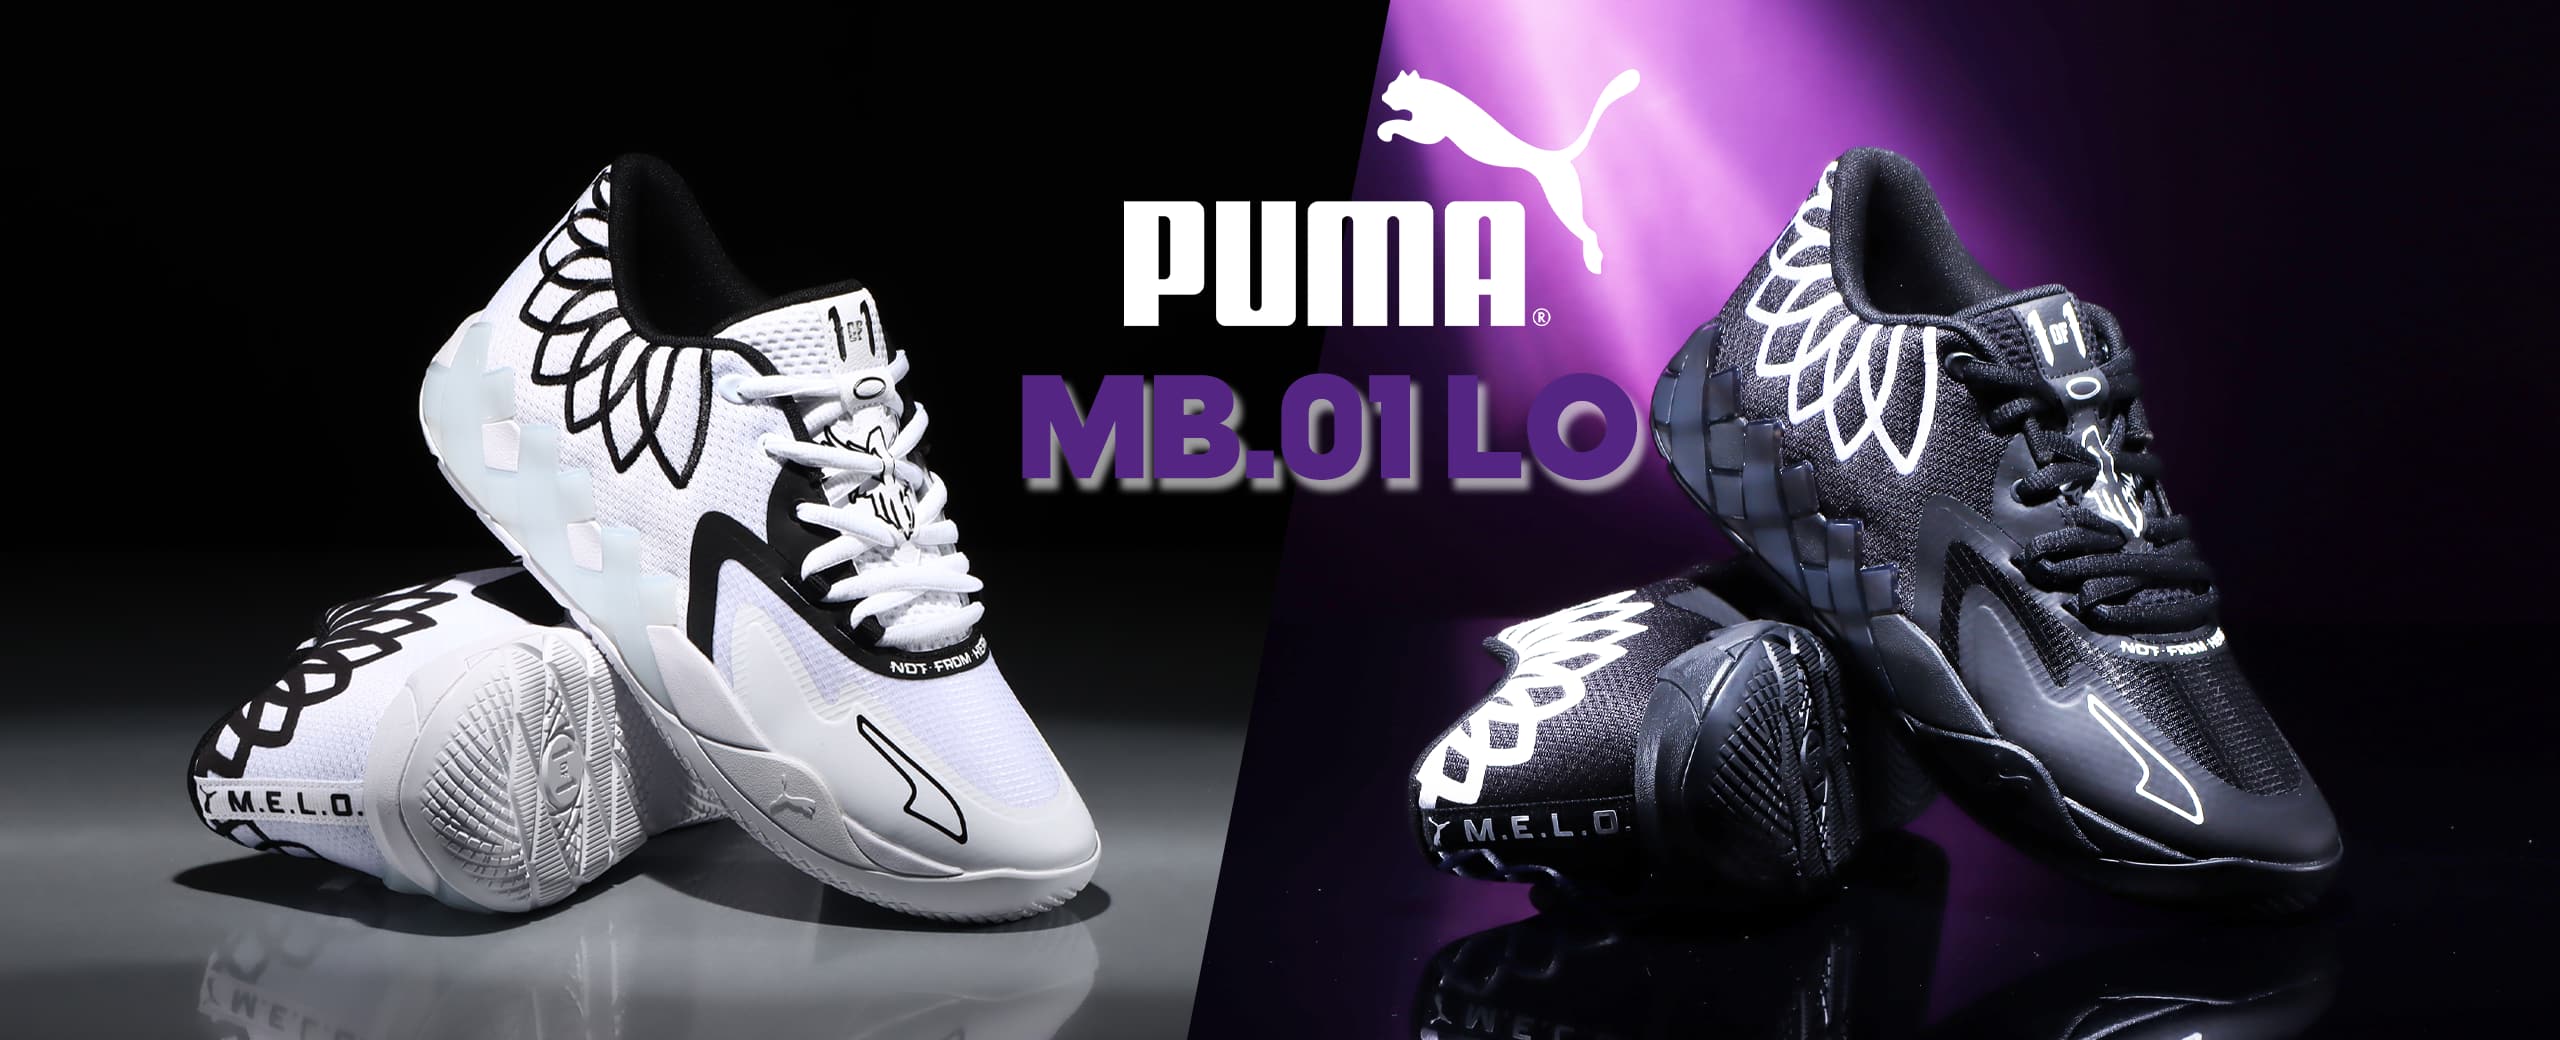 Puma MB.01 Lo 26.5cm